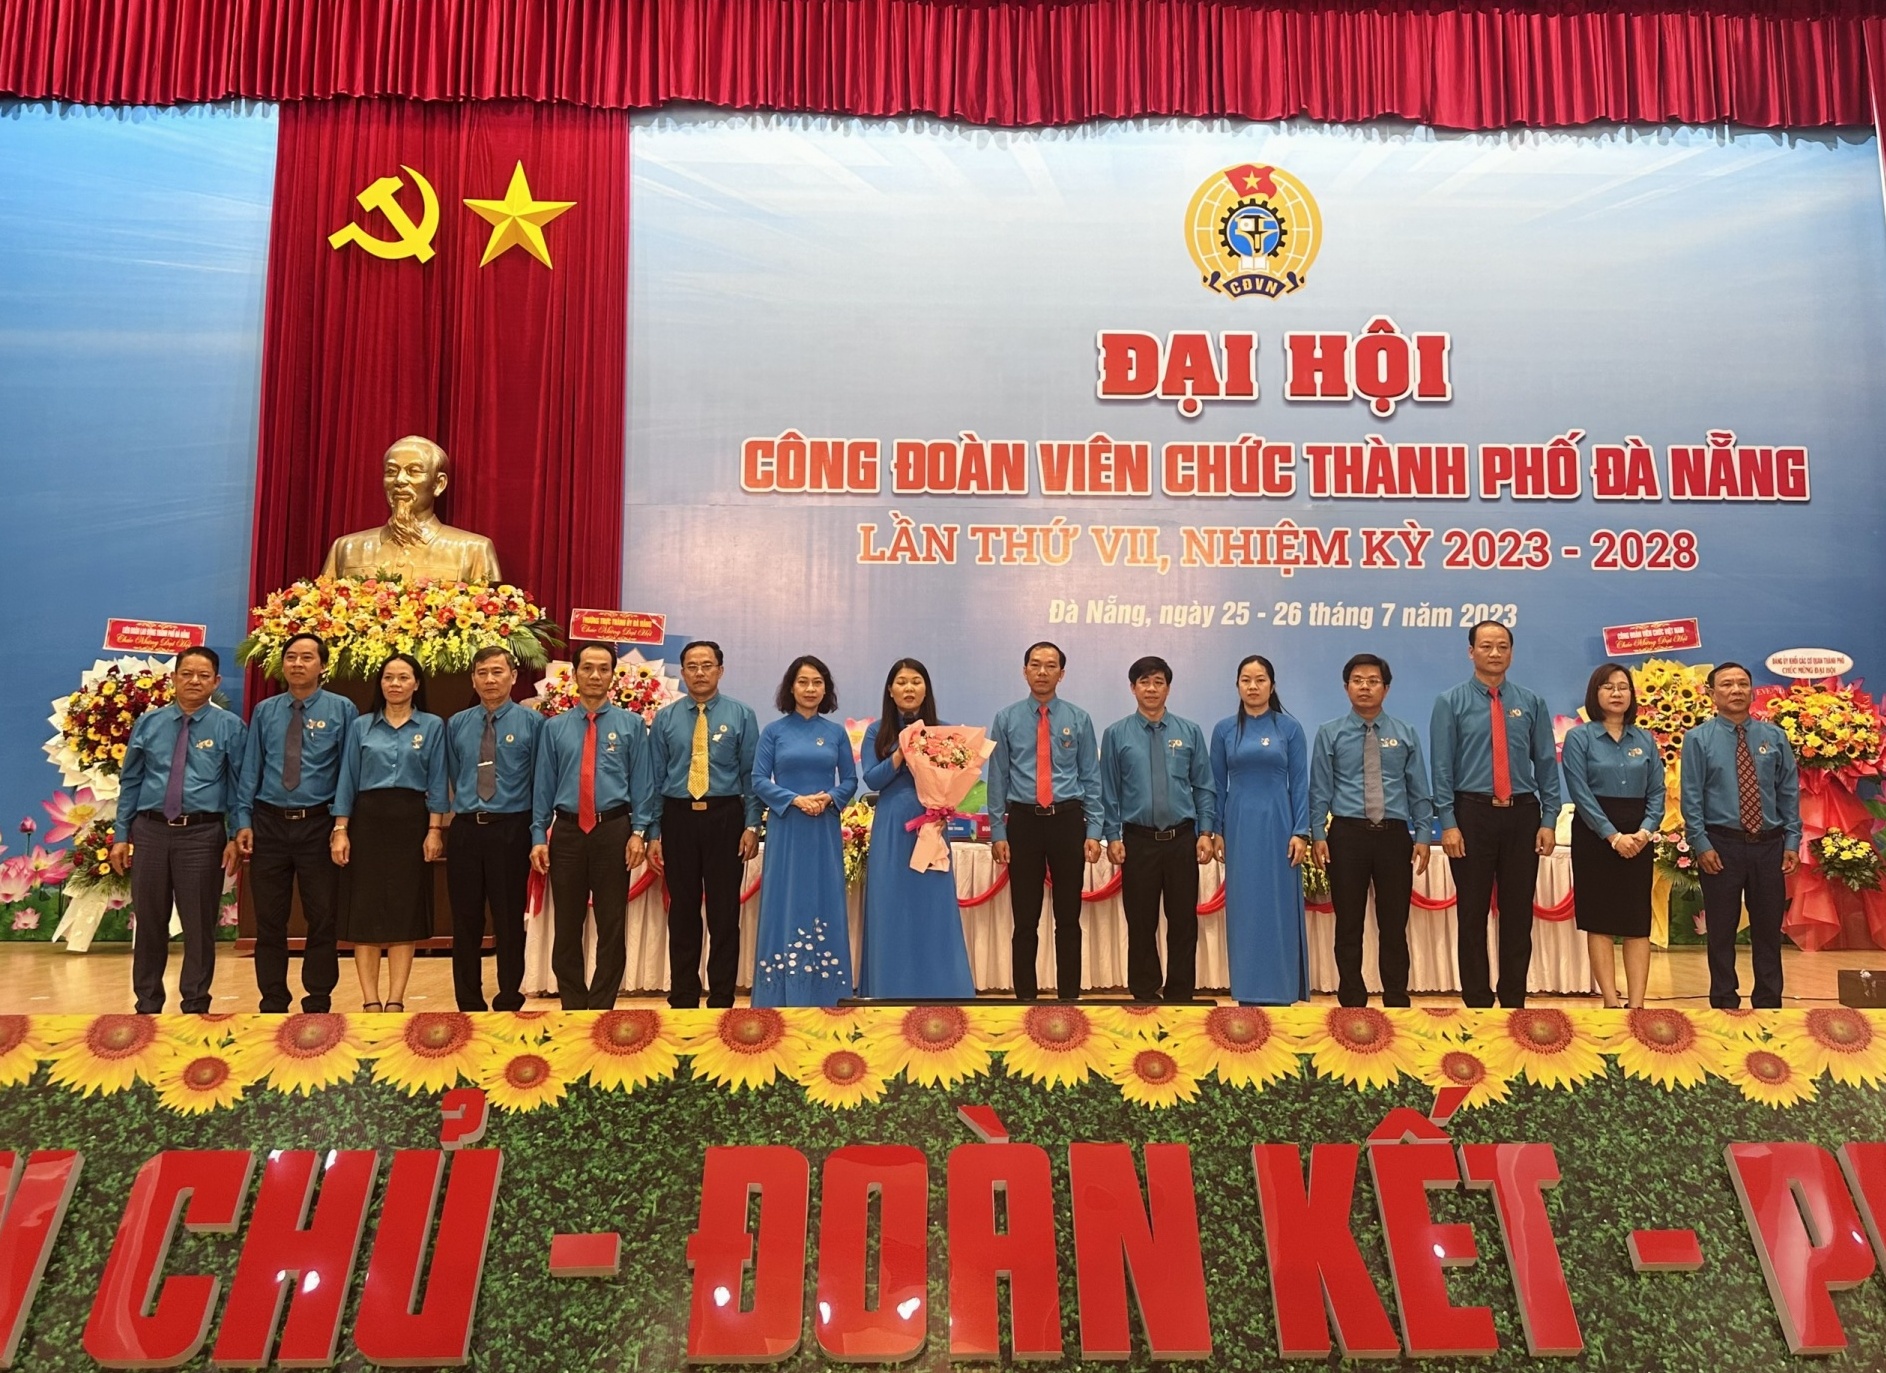 Công đoàn Viên chức thành phố Đà Nẵng: Một nhiệm kỳ với nhiều kết quả nổi bật